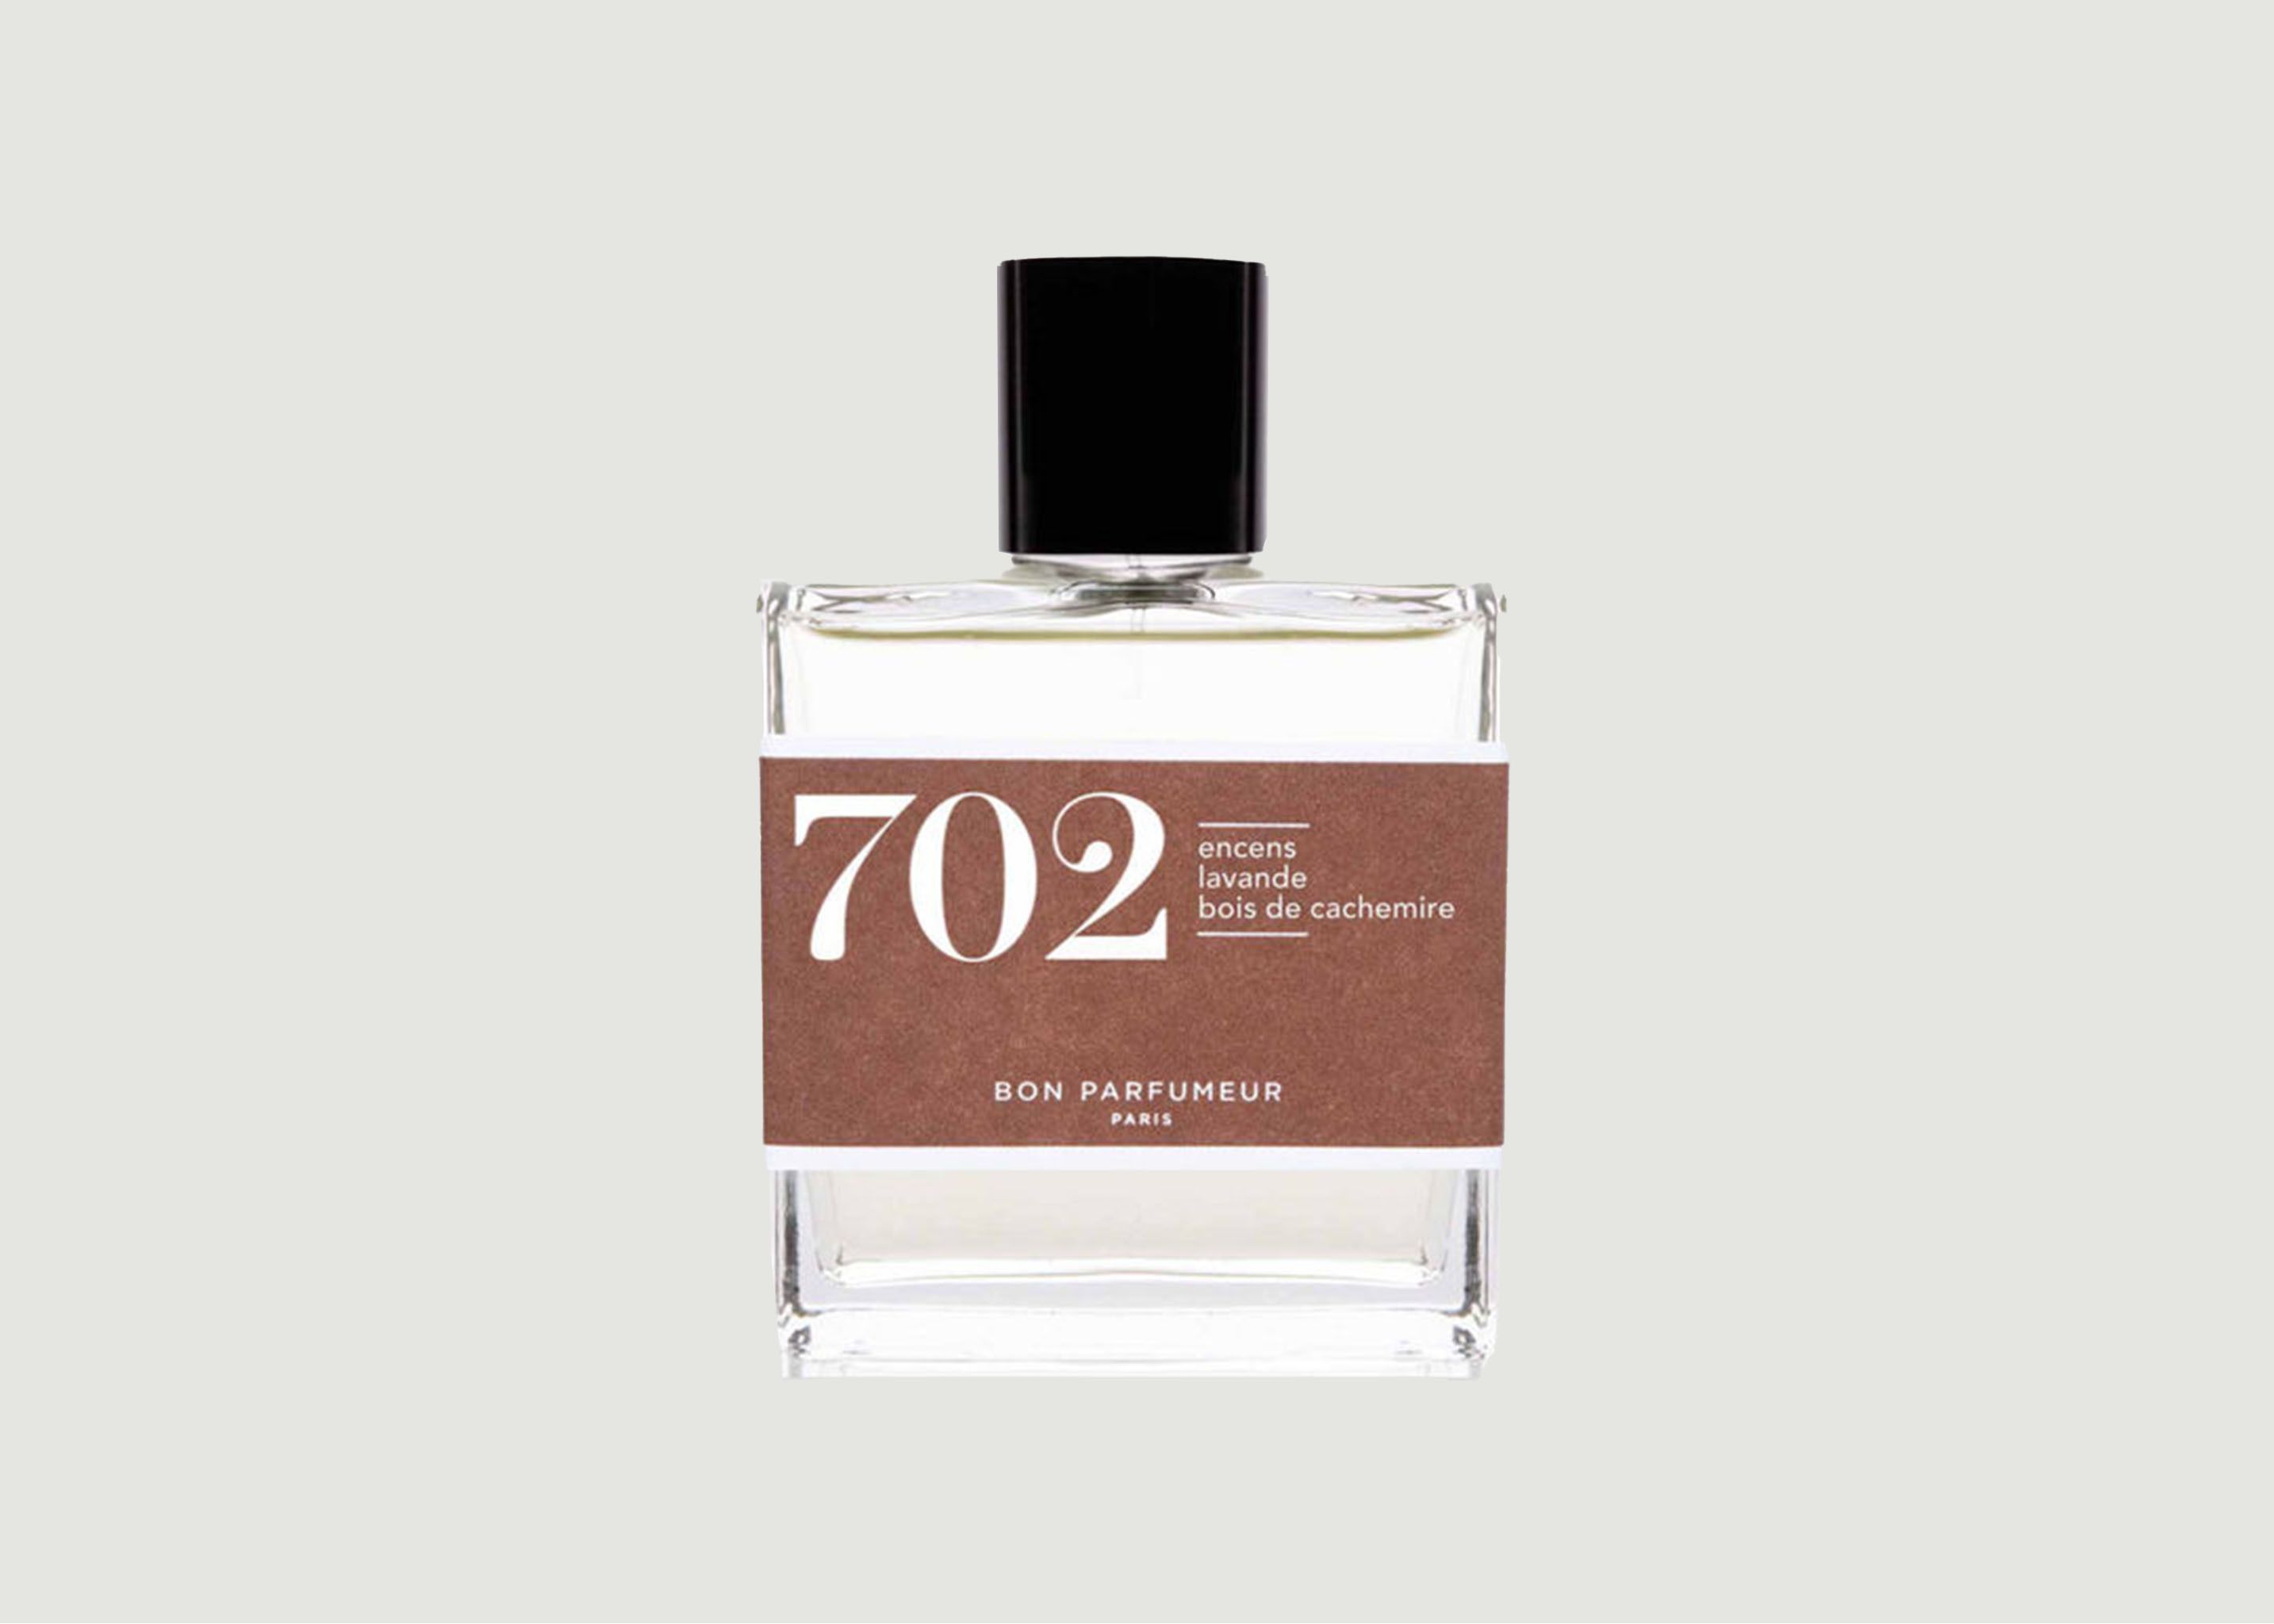 Eau de Parfum 702: Wierook, Lavendel, Kasjmierhout - Bon Parfumeur